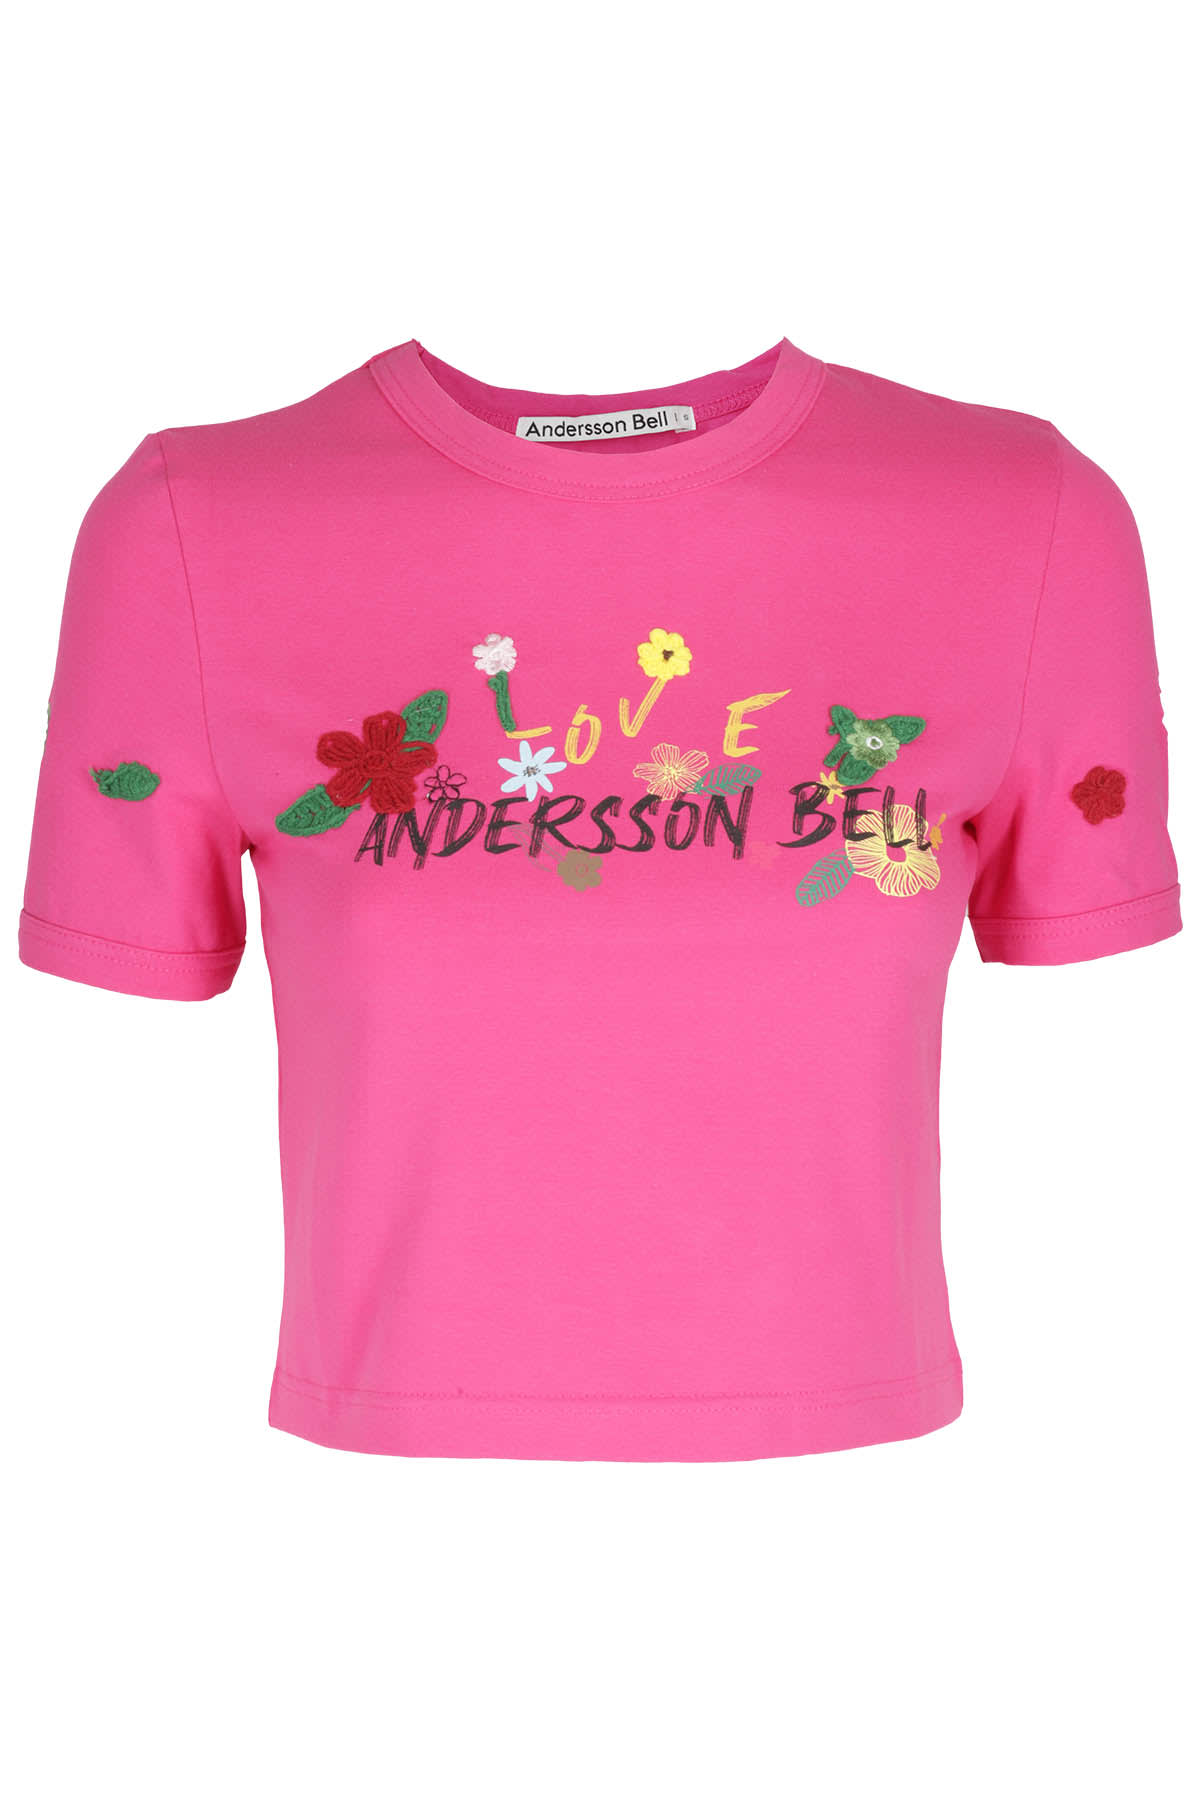 Andersson Bell Dasha Flower Garden Logo